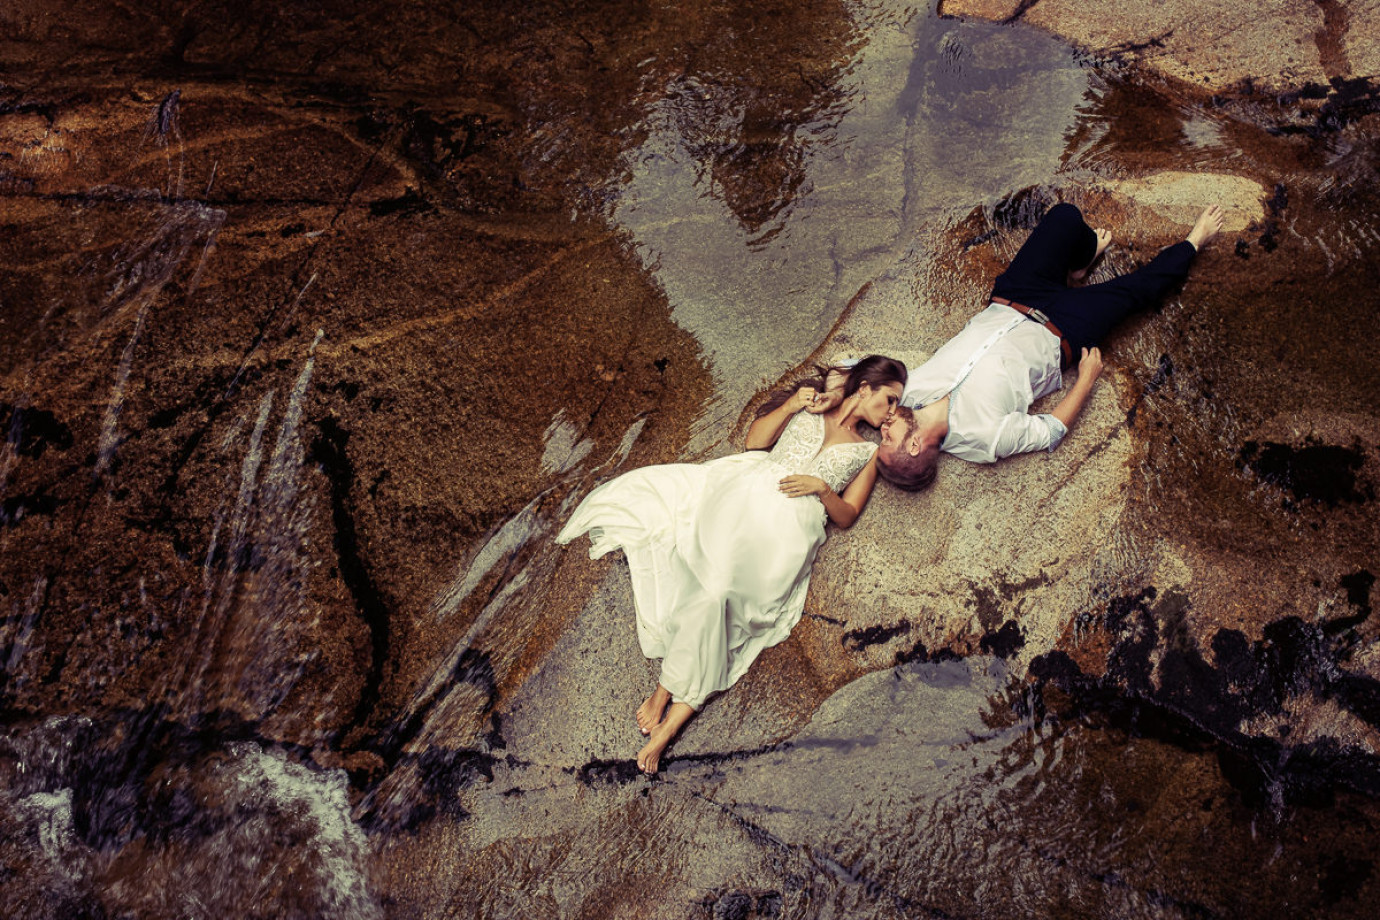 fotograf wroclaw sandpit-studio portfolio zdjecia slubne inspiracje wesele plener slubny sesja slubna